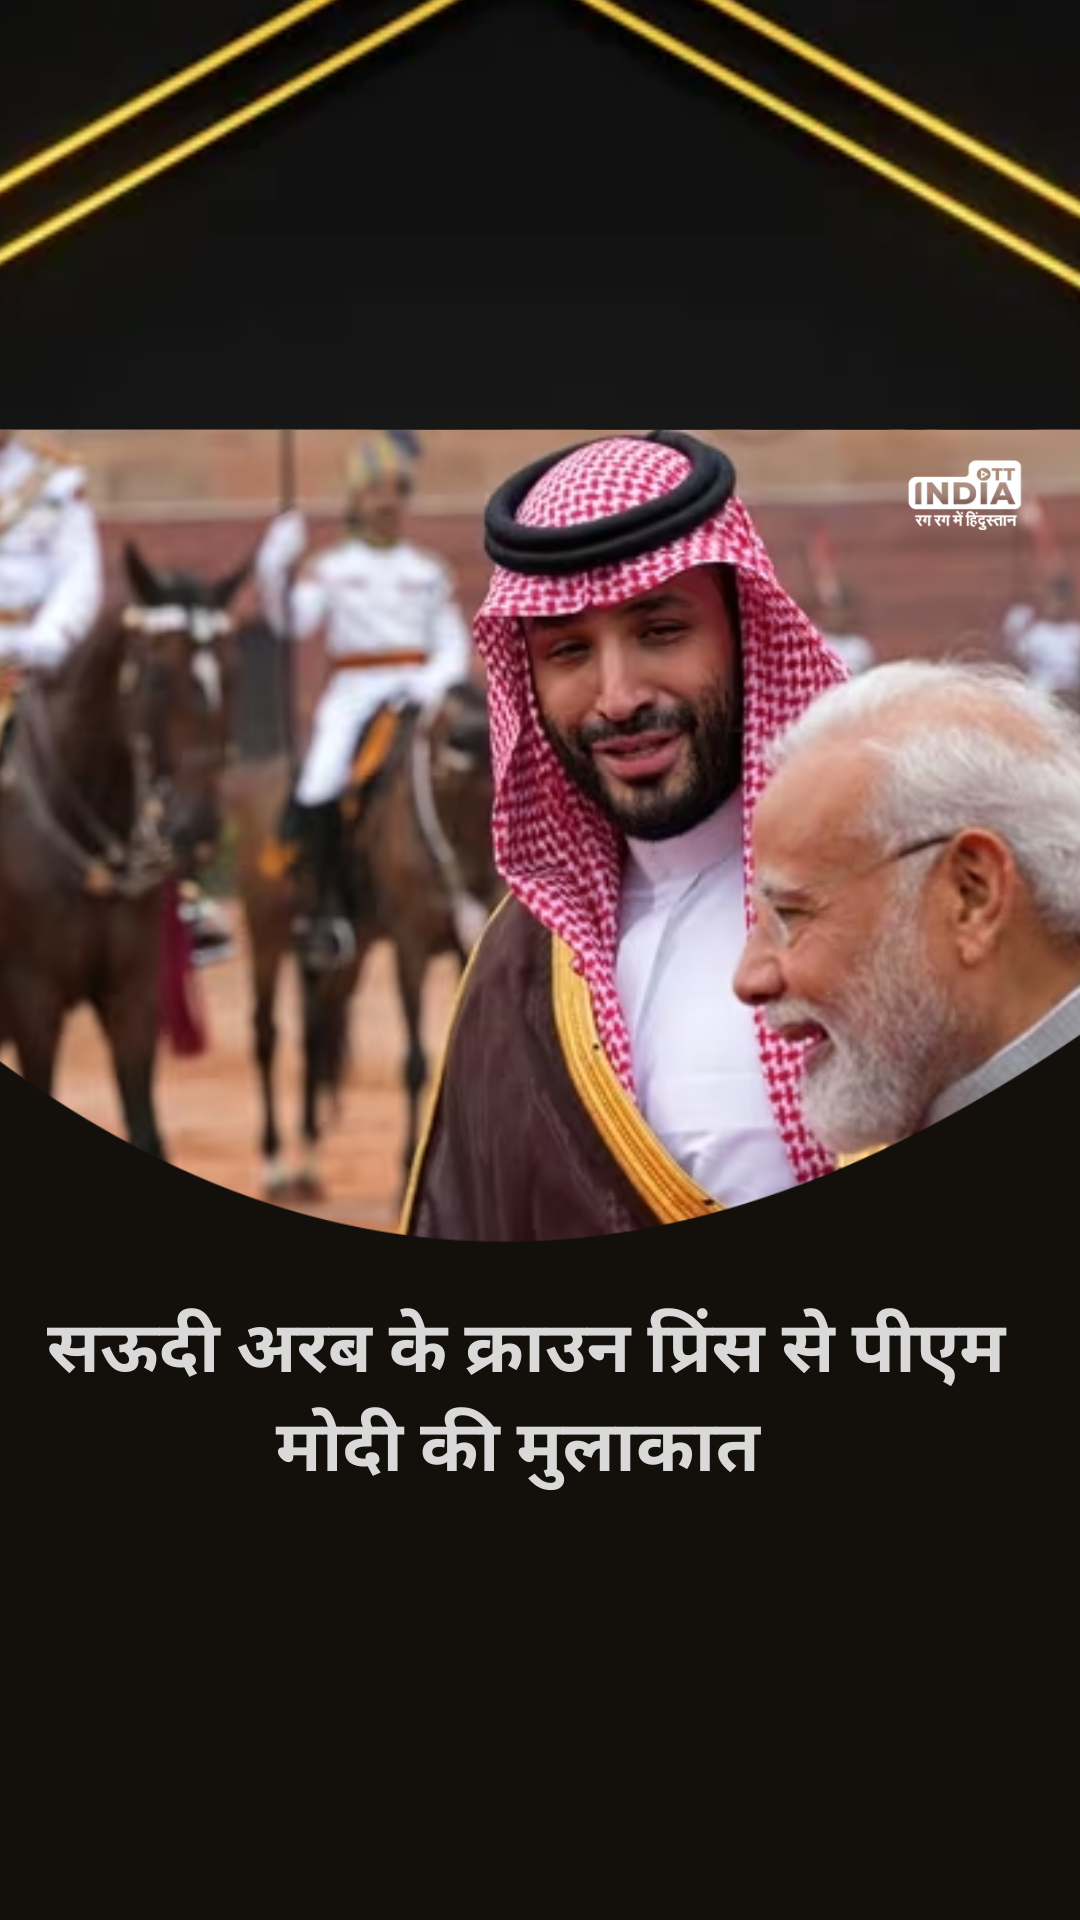 PM Modi Meets Saudi Arabia Crown Prince: हैदराबाद हाउस में पीएम मोदी से सऊदी अरब के क्राउन प्रिंस मोहम्मद बिन सलमान की मुलाकात…